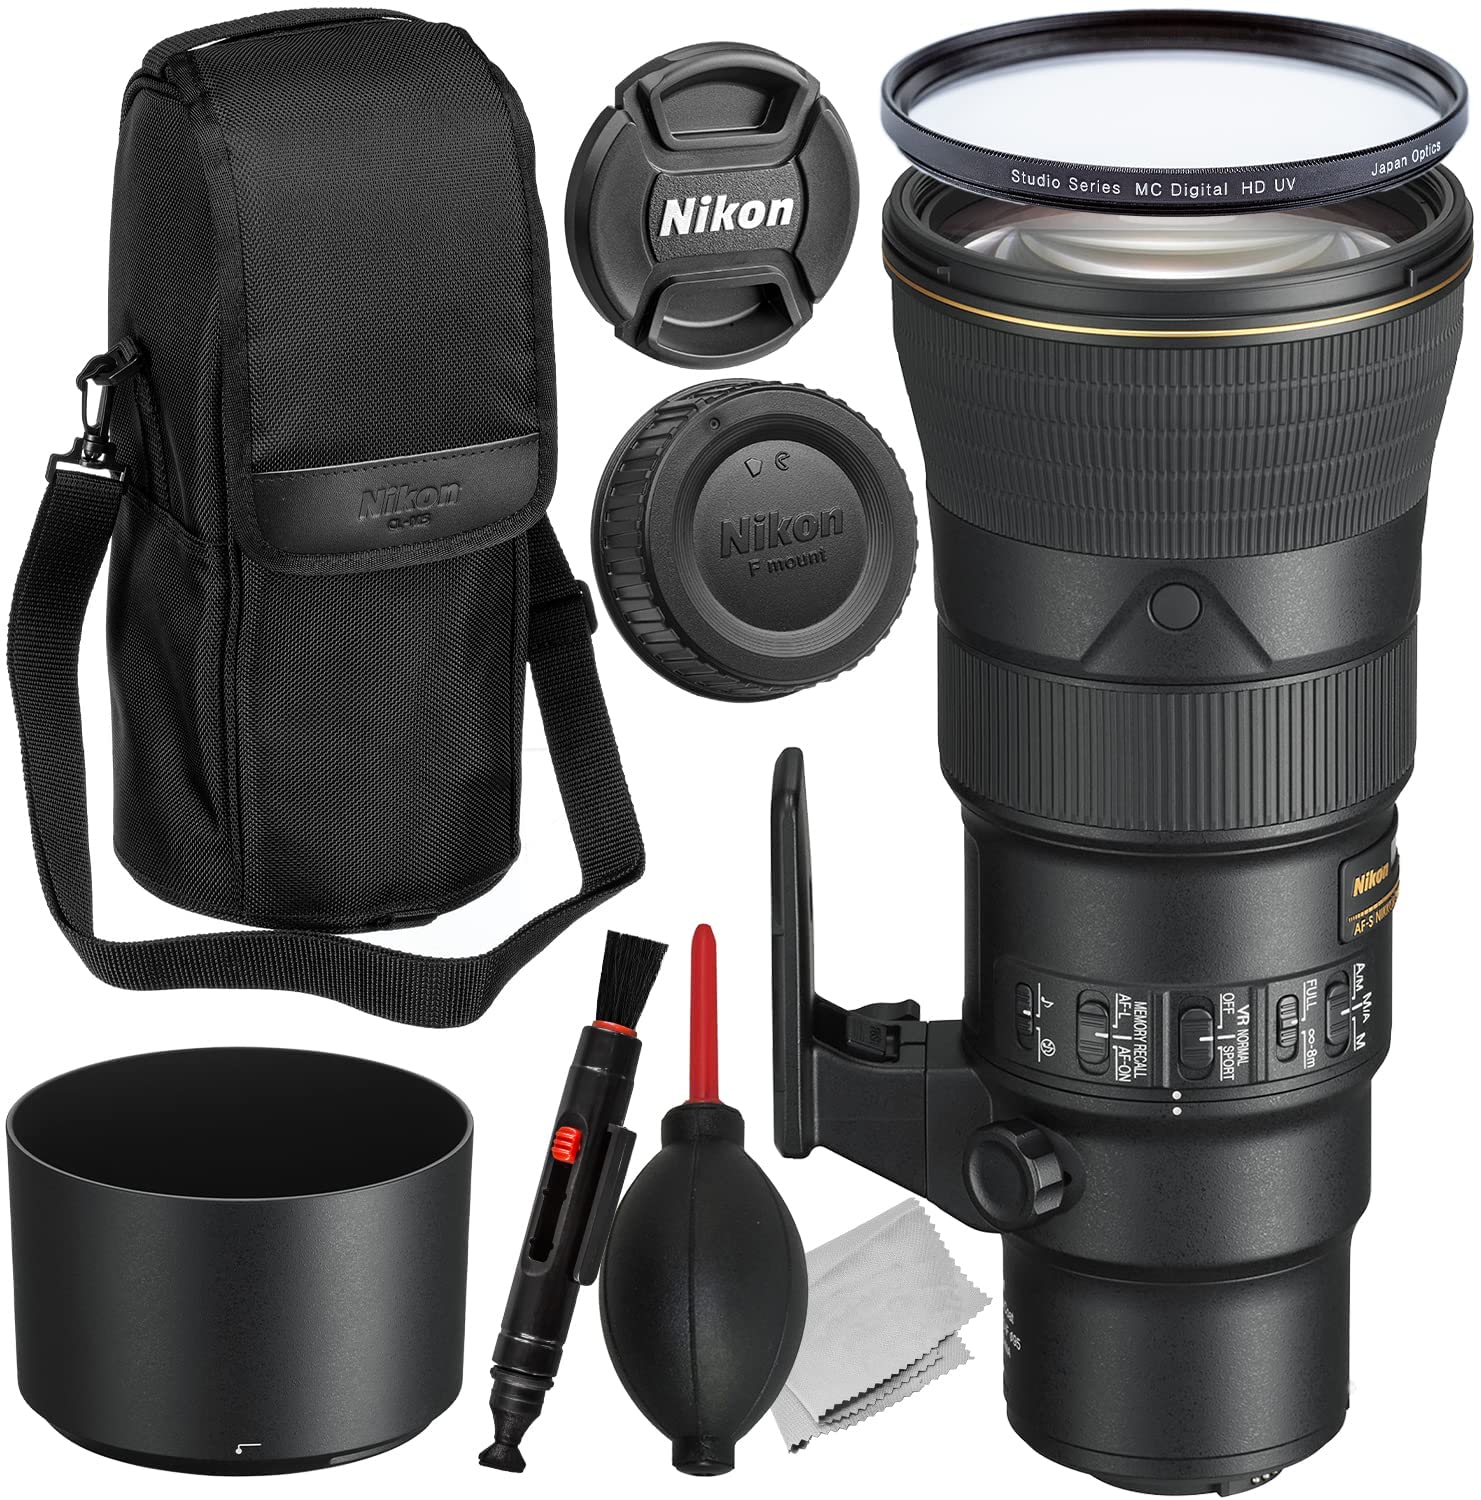 Nikon AF-S NIKKOR 500mm f/5.6E PF ED VR Lens + Multi-Coated Digital HD UV Filter, Lens/Gadget Maintenance Pen, Manufacturerâ??s Accessories & More (10pc Bundle)